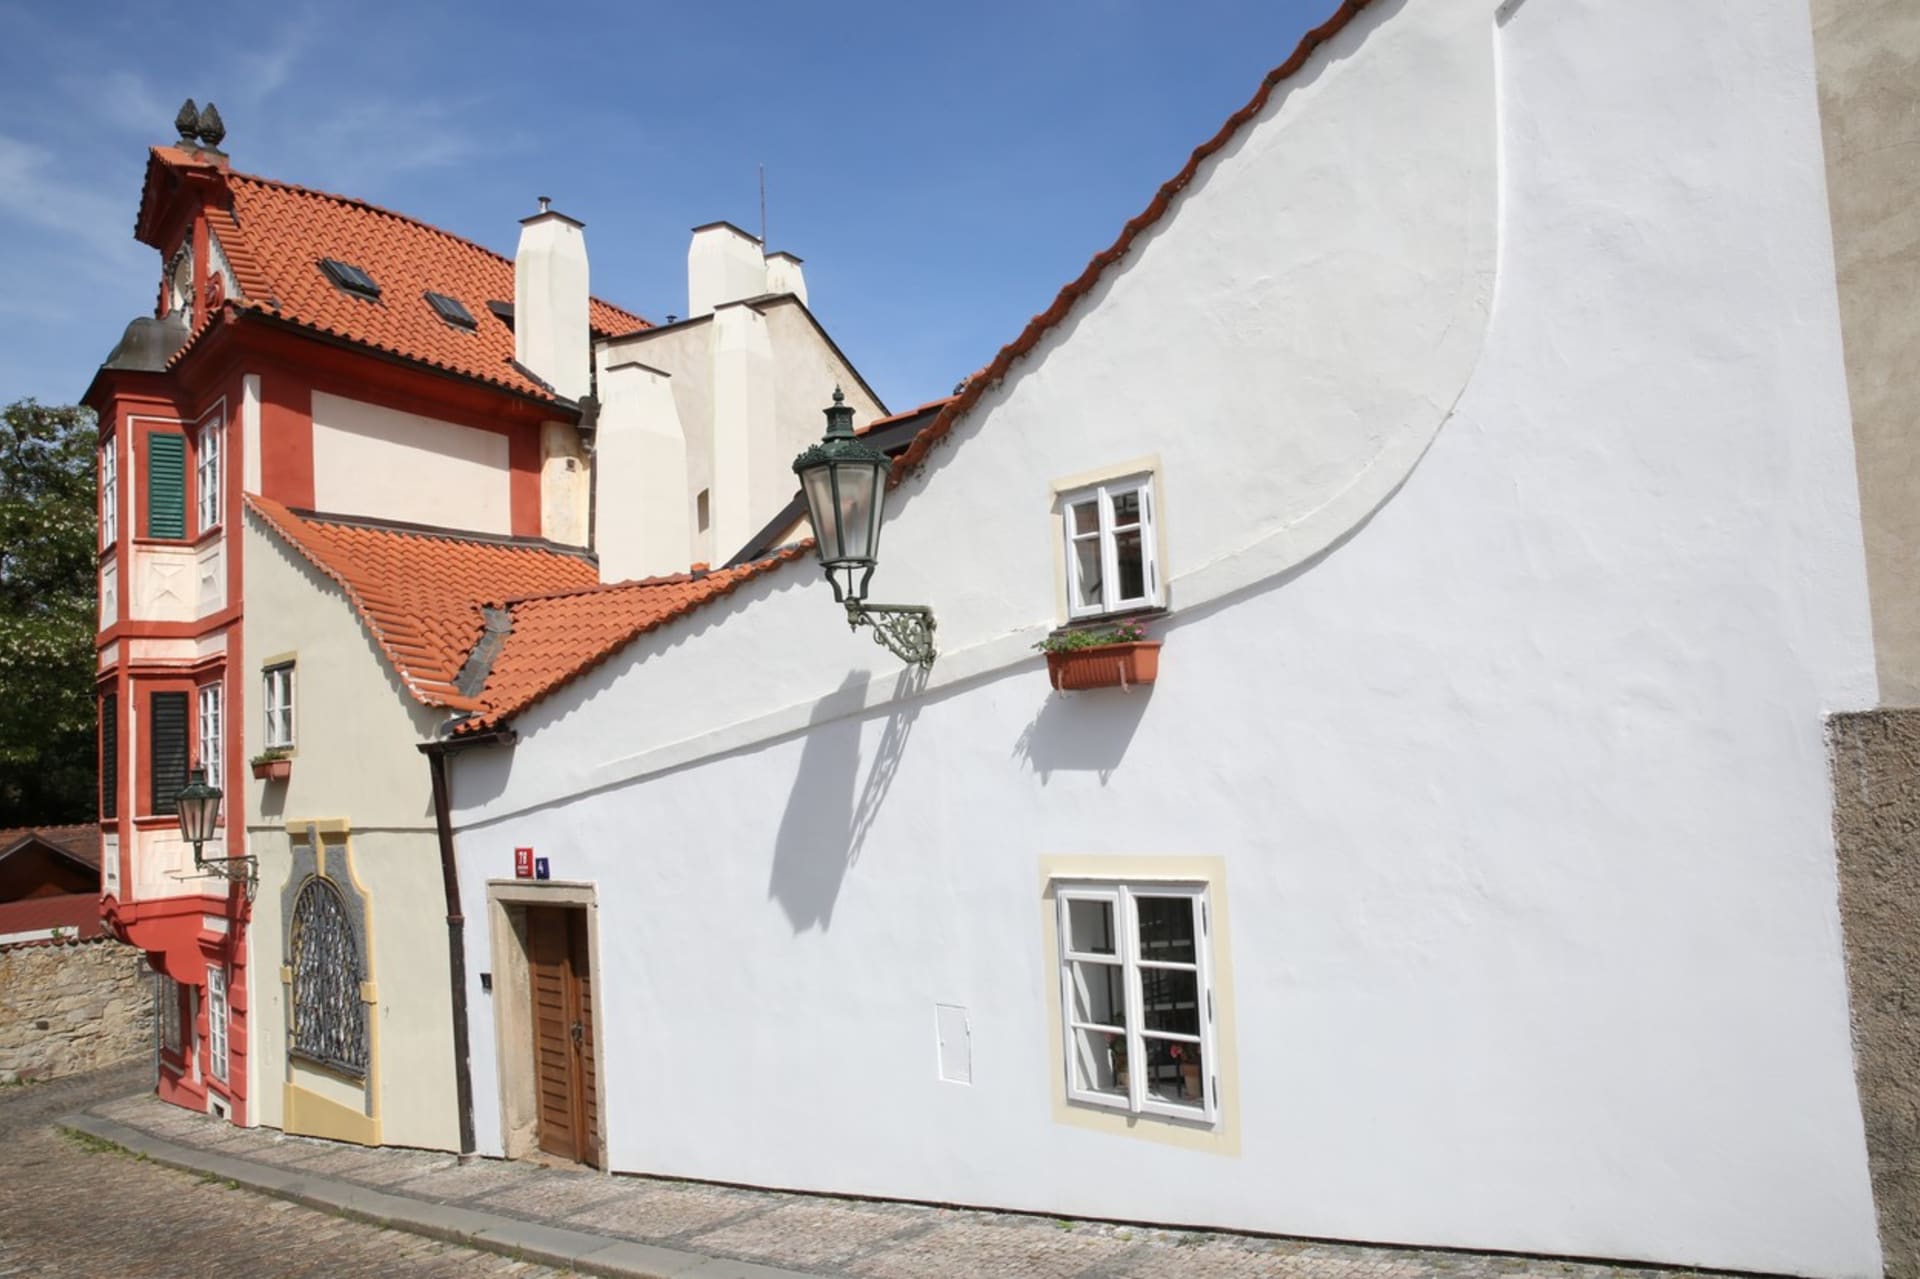 Mohutná zeď barokních hradeb připomíná, že právě tady tehdy končívala historická Praha a lokalitě se začalo říkat Nový Svět.